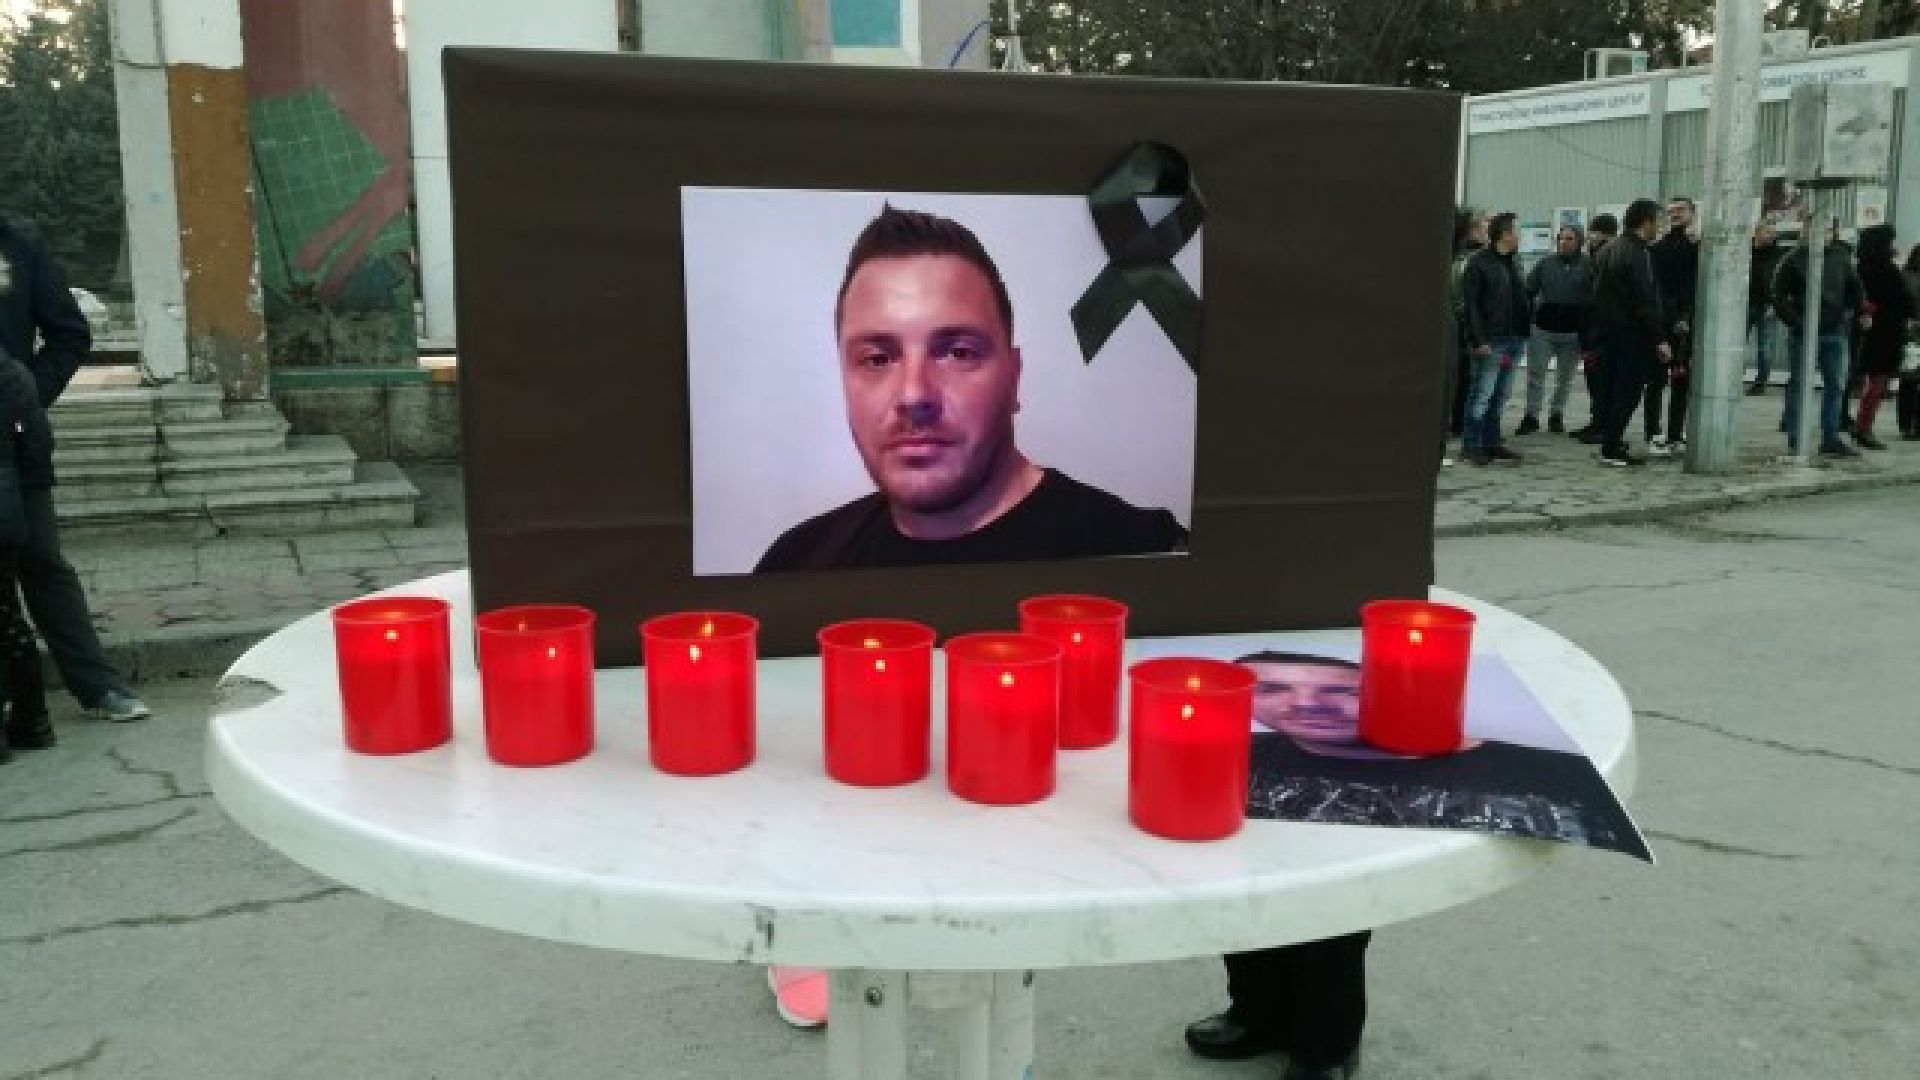 Бдение в памет на убития в Кюстендил Валери. Задържаният: "Ne sm ybiec"